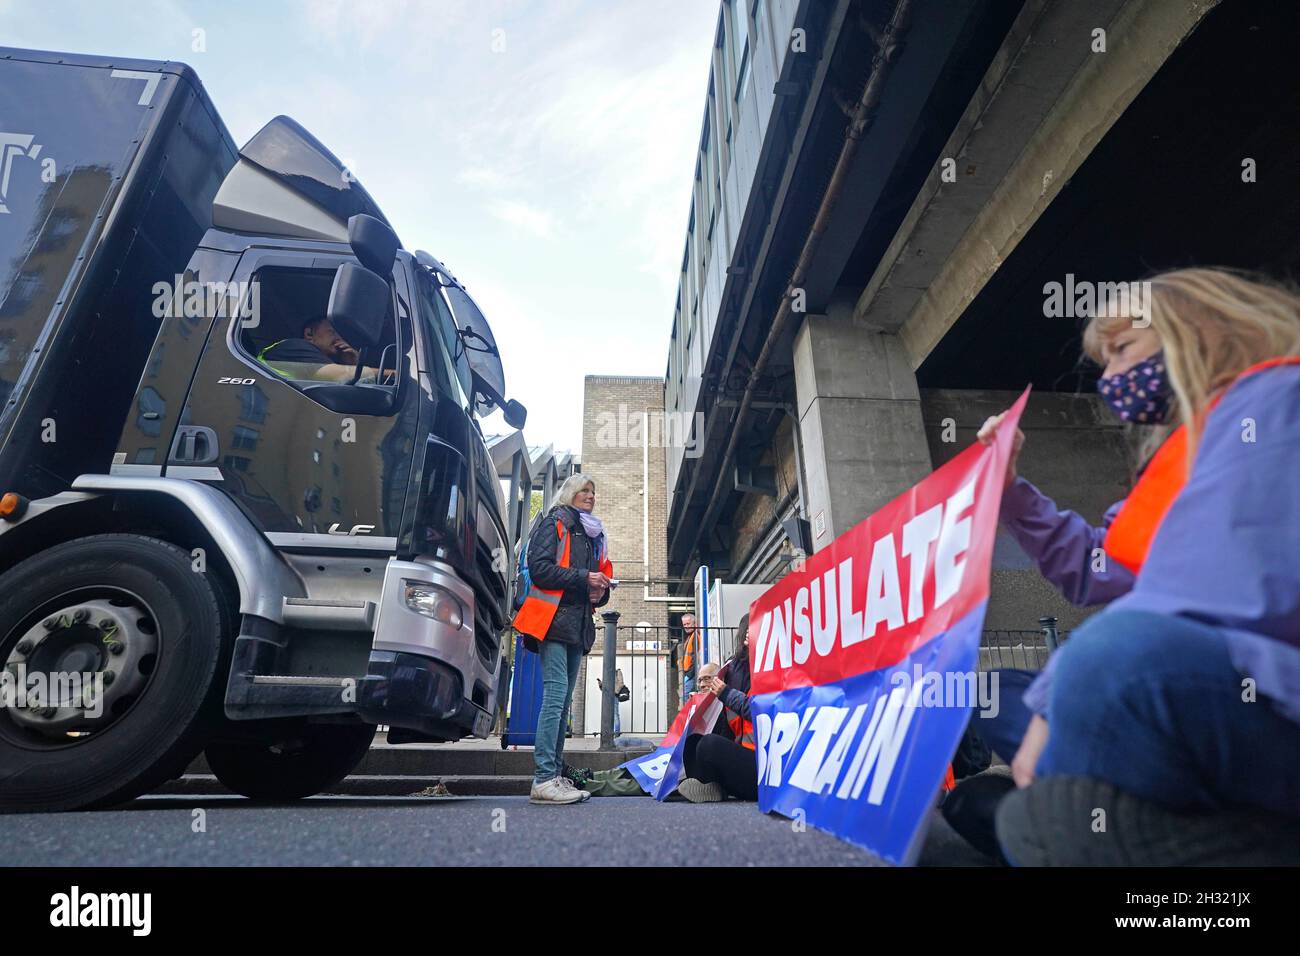 Demonstranten, die Großbritannien davon abbringen, eine Straße in der Nähe von Canary Wharf im Osten Londons zu blockieren. Die Klimagruppe, die Großbritannien beleidigt hatte, hatte versprochen, ihre Blockaden-Proteste wieder aufzunehmen, obwohl die Gefahr besteht, dass seine Mitglieder inhaftiert oder mit Geldstrafen belegt werden. Bilddatum: Montag, 25. Oktober 2021. Stockfoto